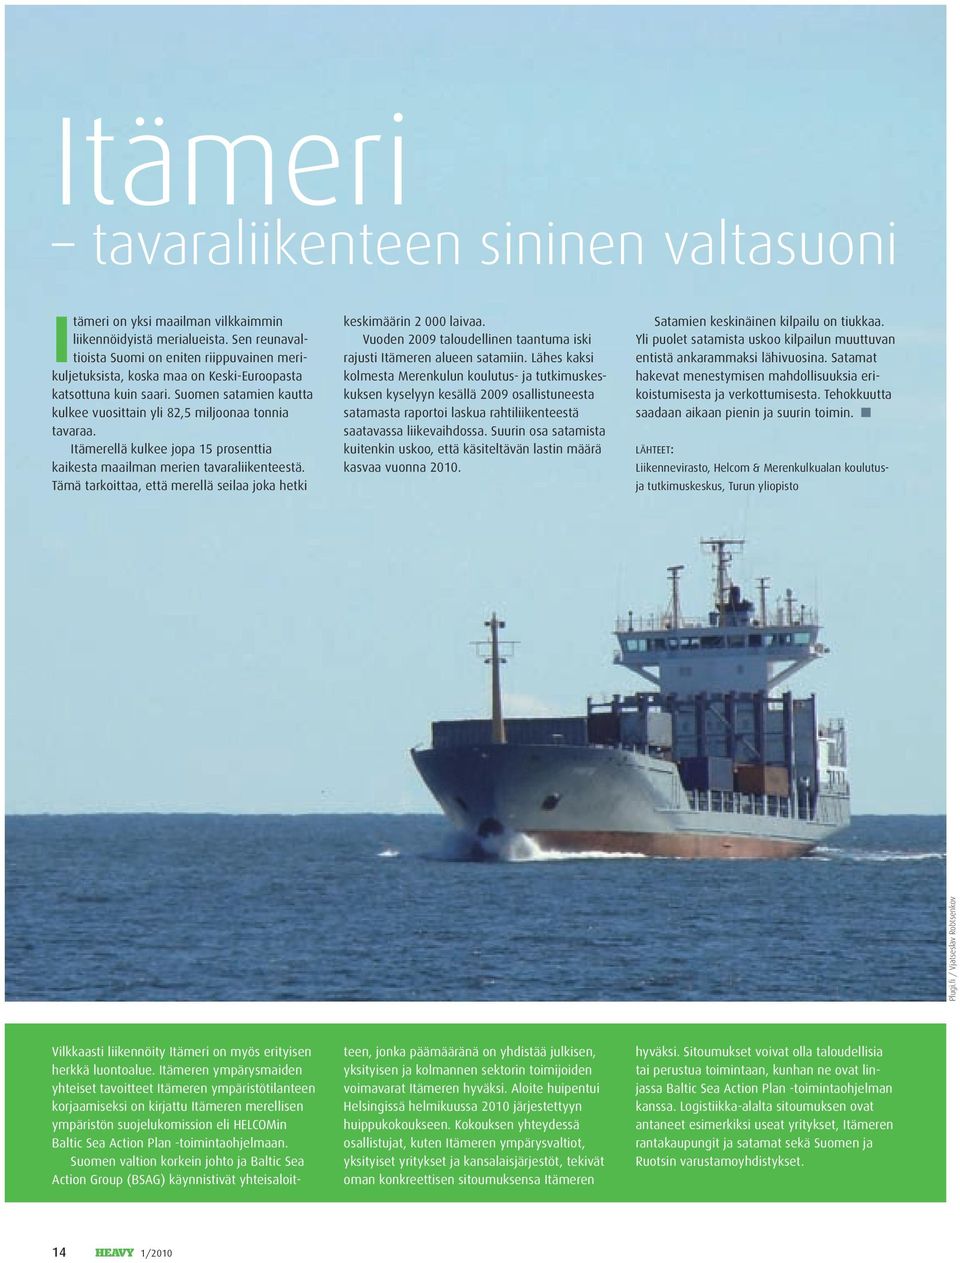 Itämerellä kulkee jopa 15 prosenttia kaikesta maailman merien tavaraliikenteestä. Tämä tarkoittaa, että merellä seilaa joka hetki keskimäärin 2 000 laivaa.